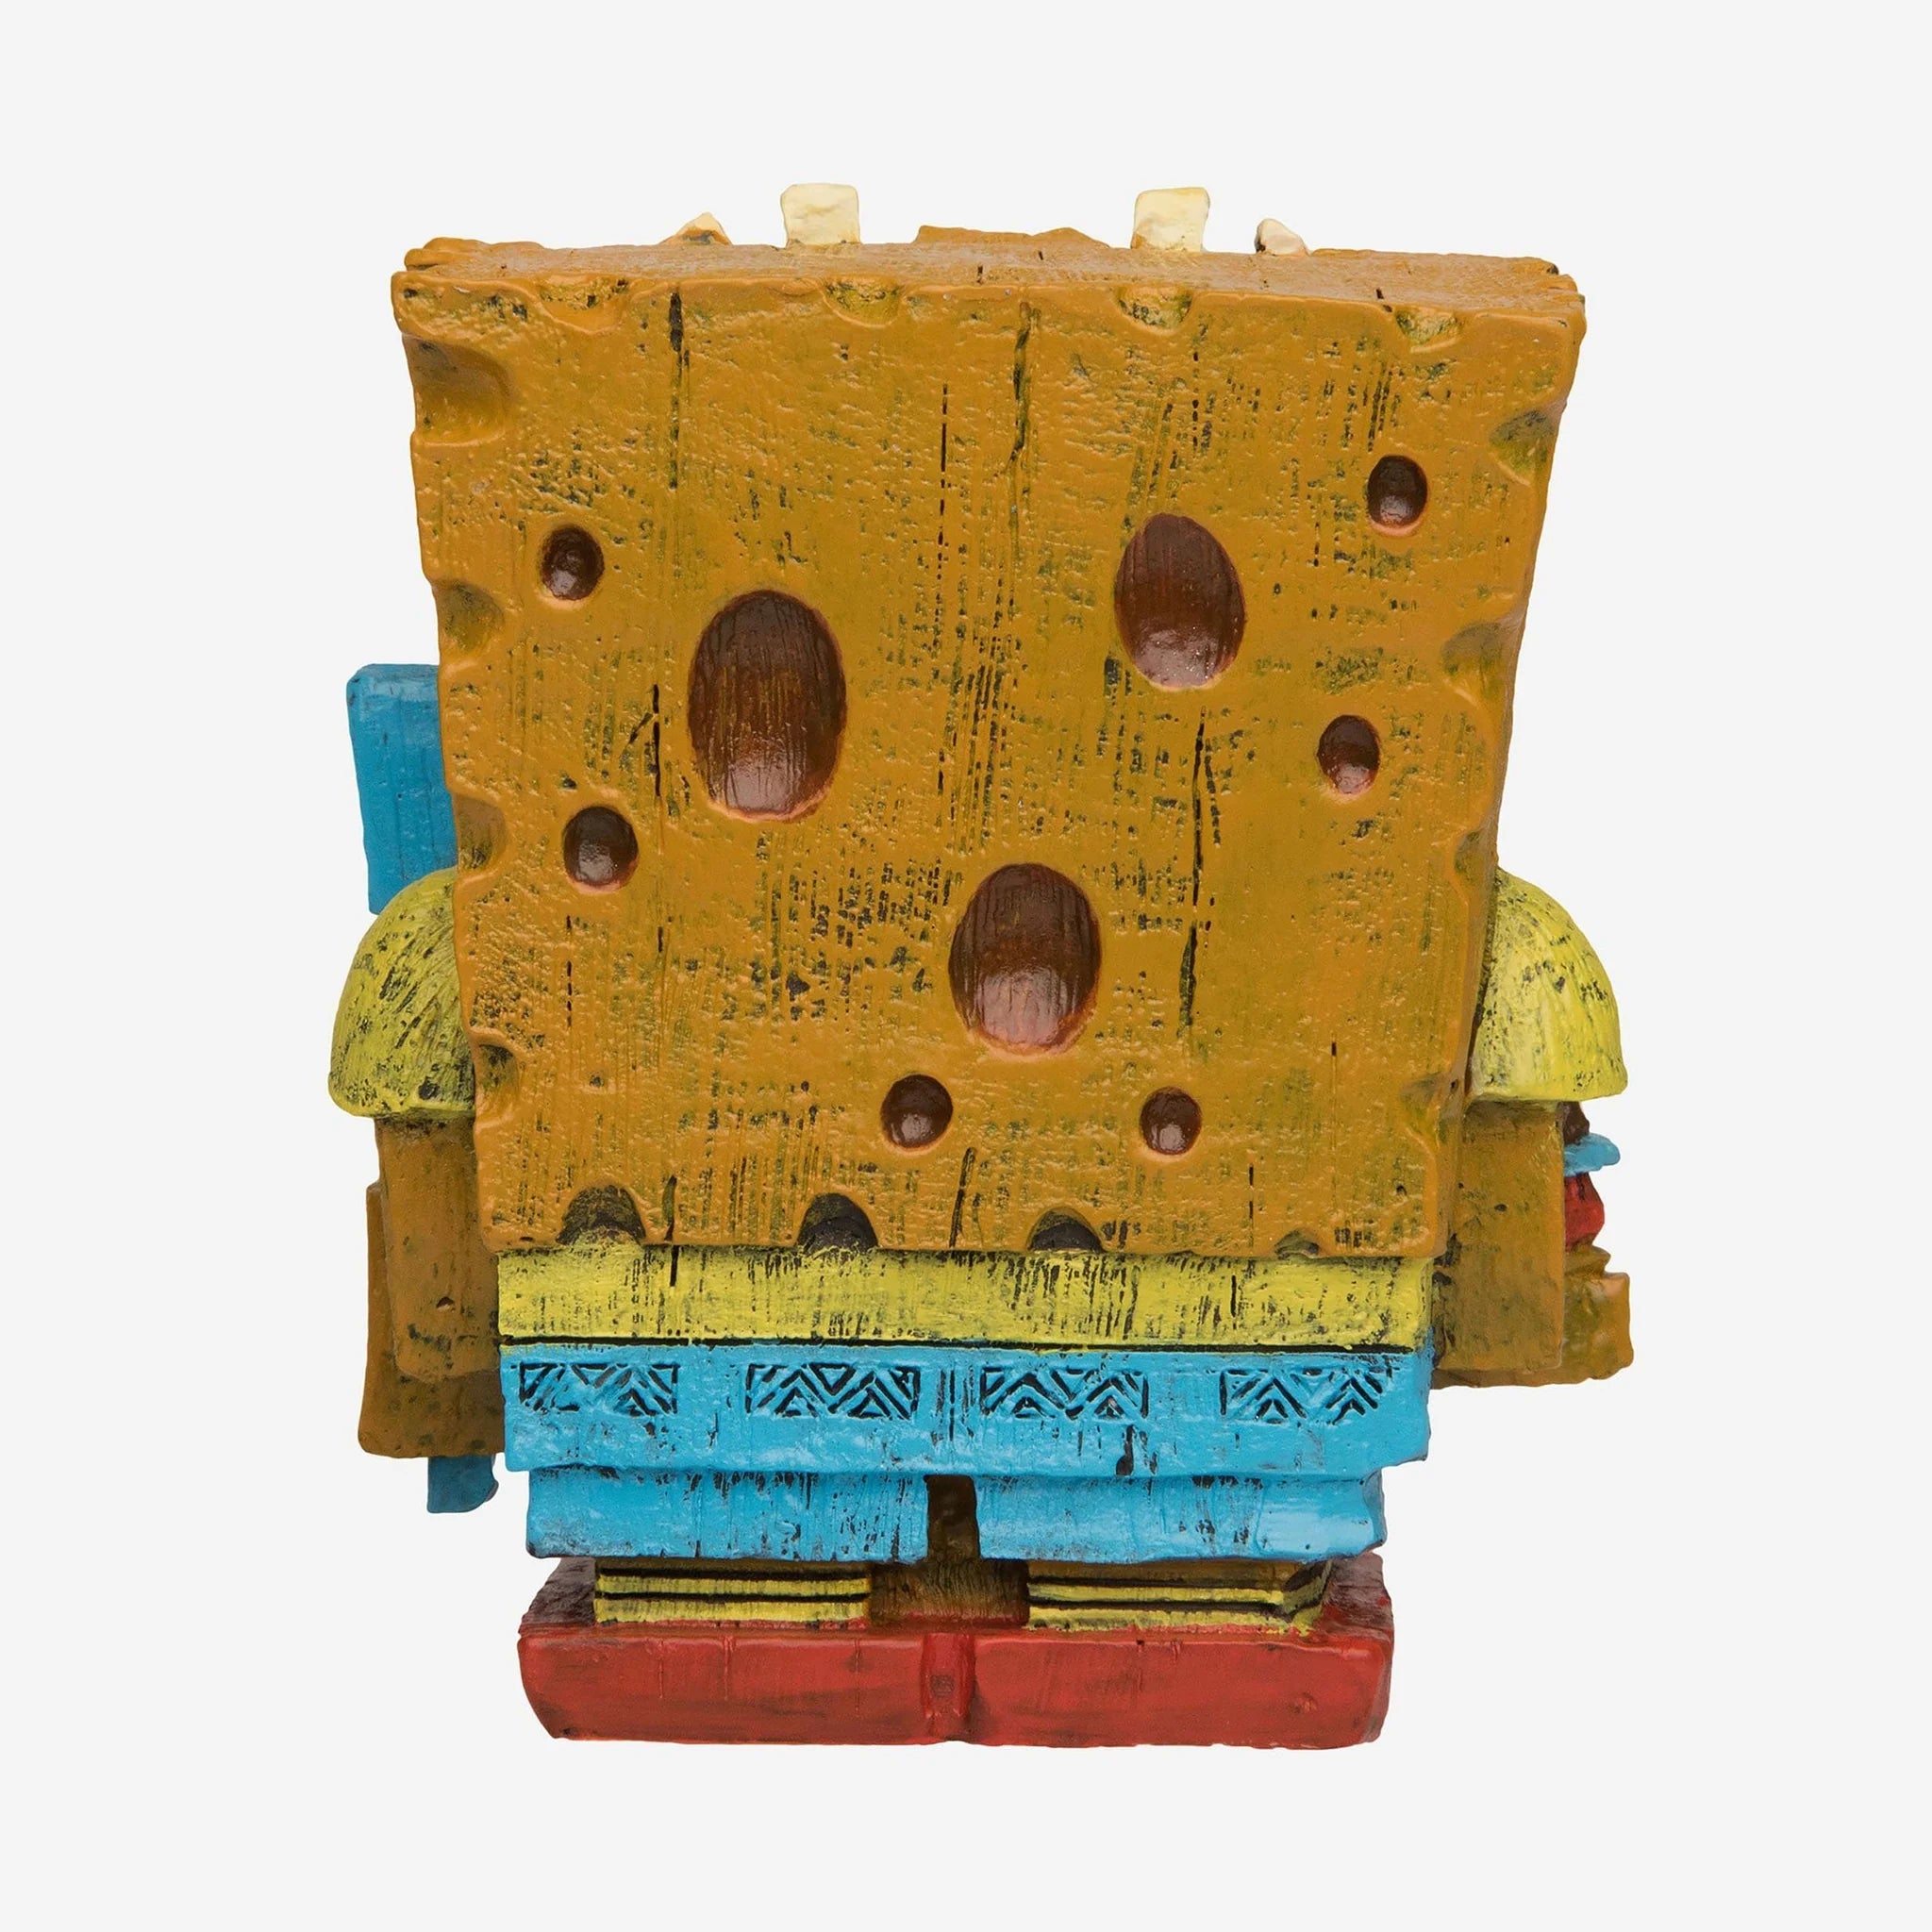 Eekeez : Spongebob Squarepants Figurine (2018 Wondercon Anaheim Ex.)